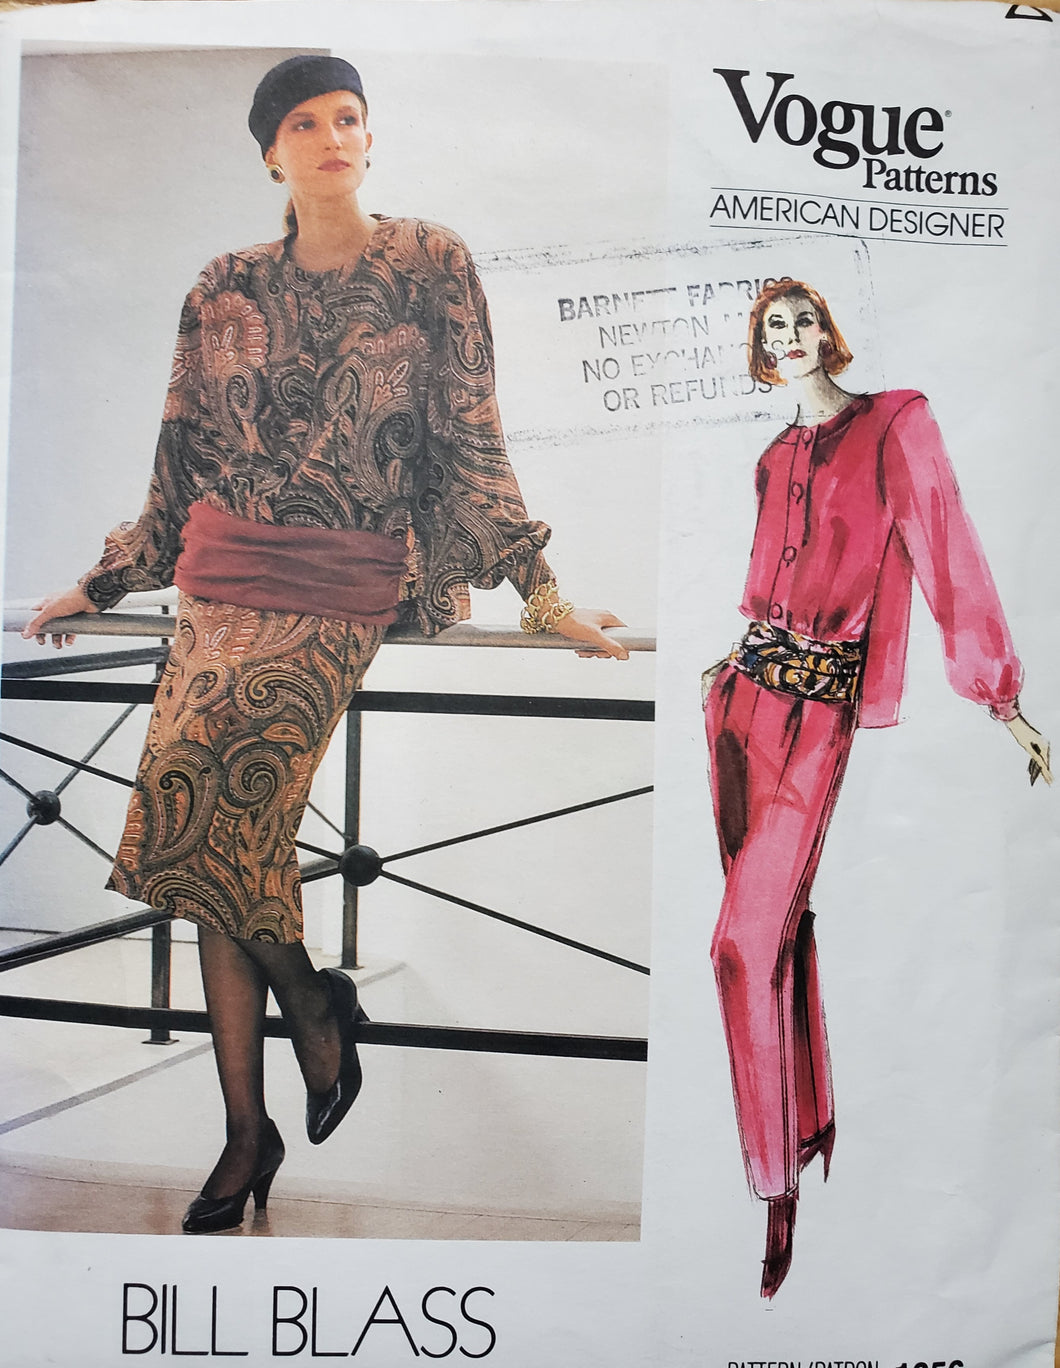 Vogue Pattern 1656, UNCUT, Designer Bill Blass, Skirt, Blouse, and Pants, Misses Size 8